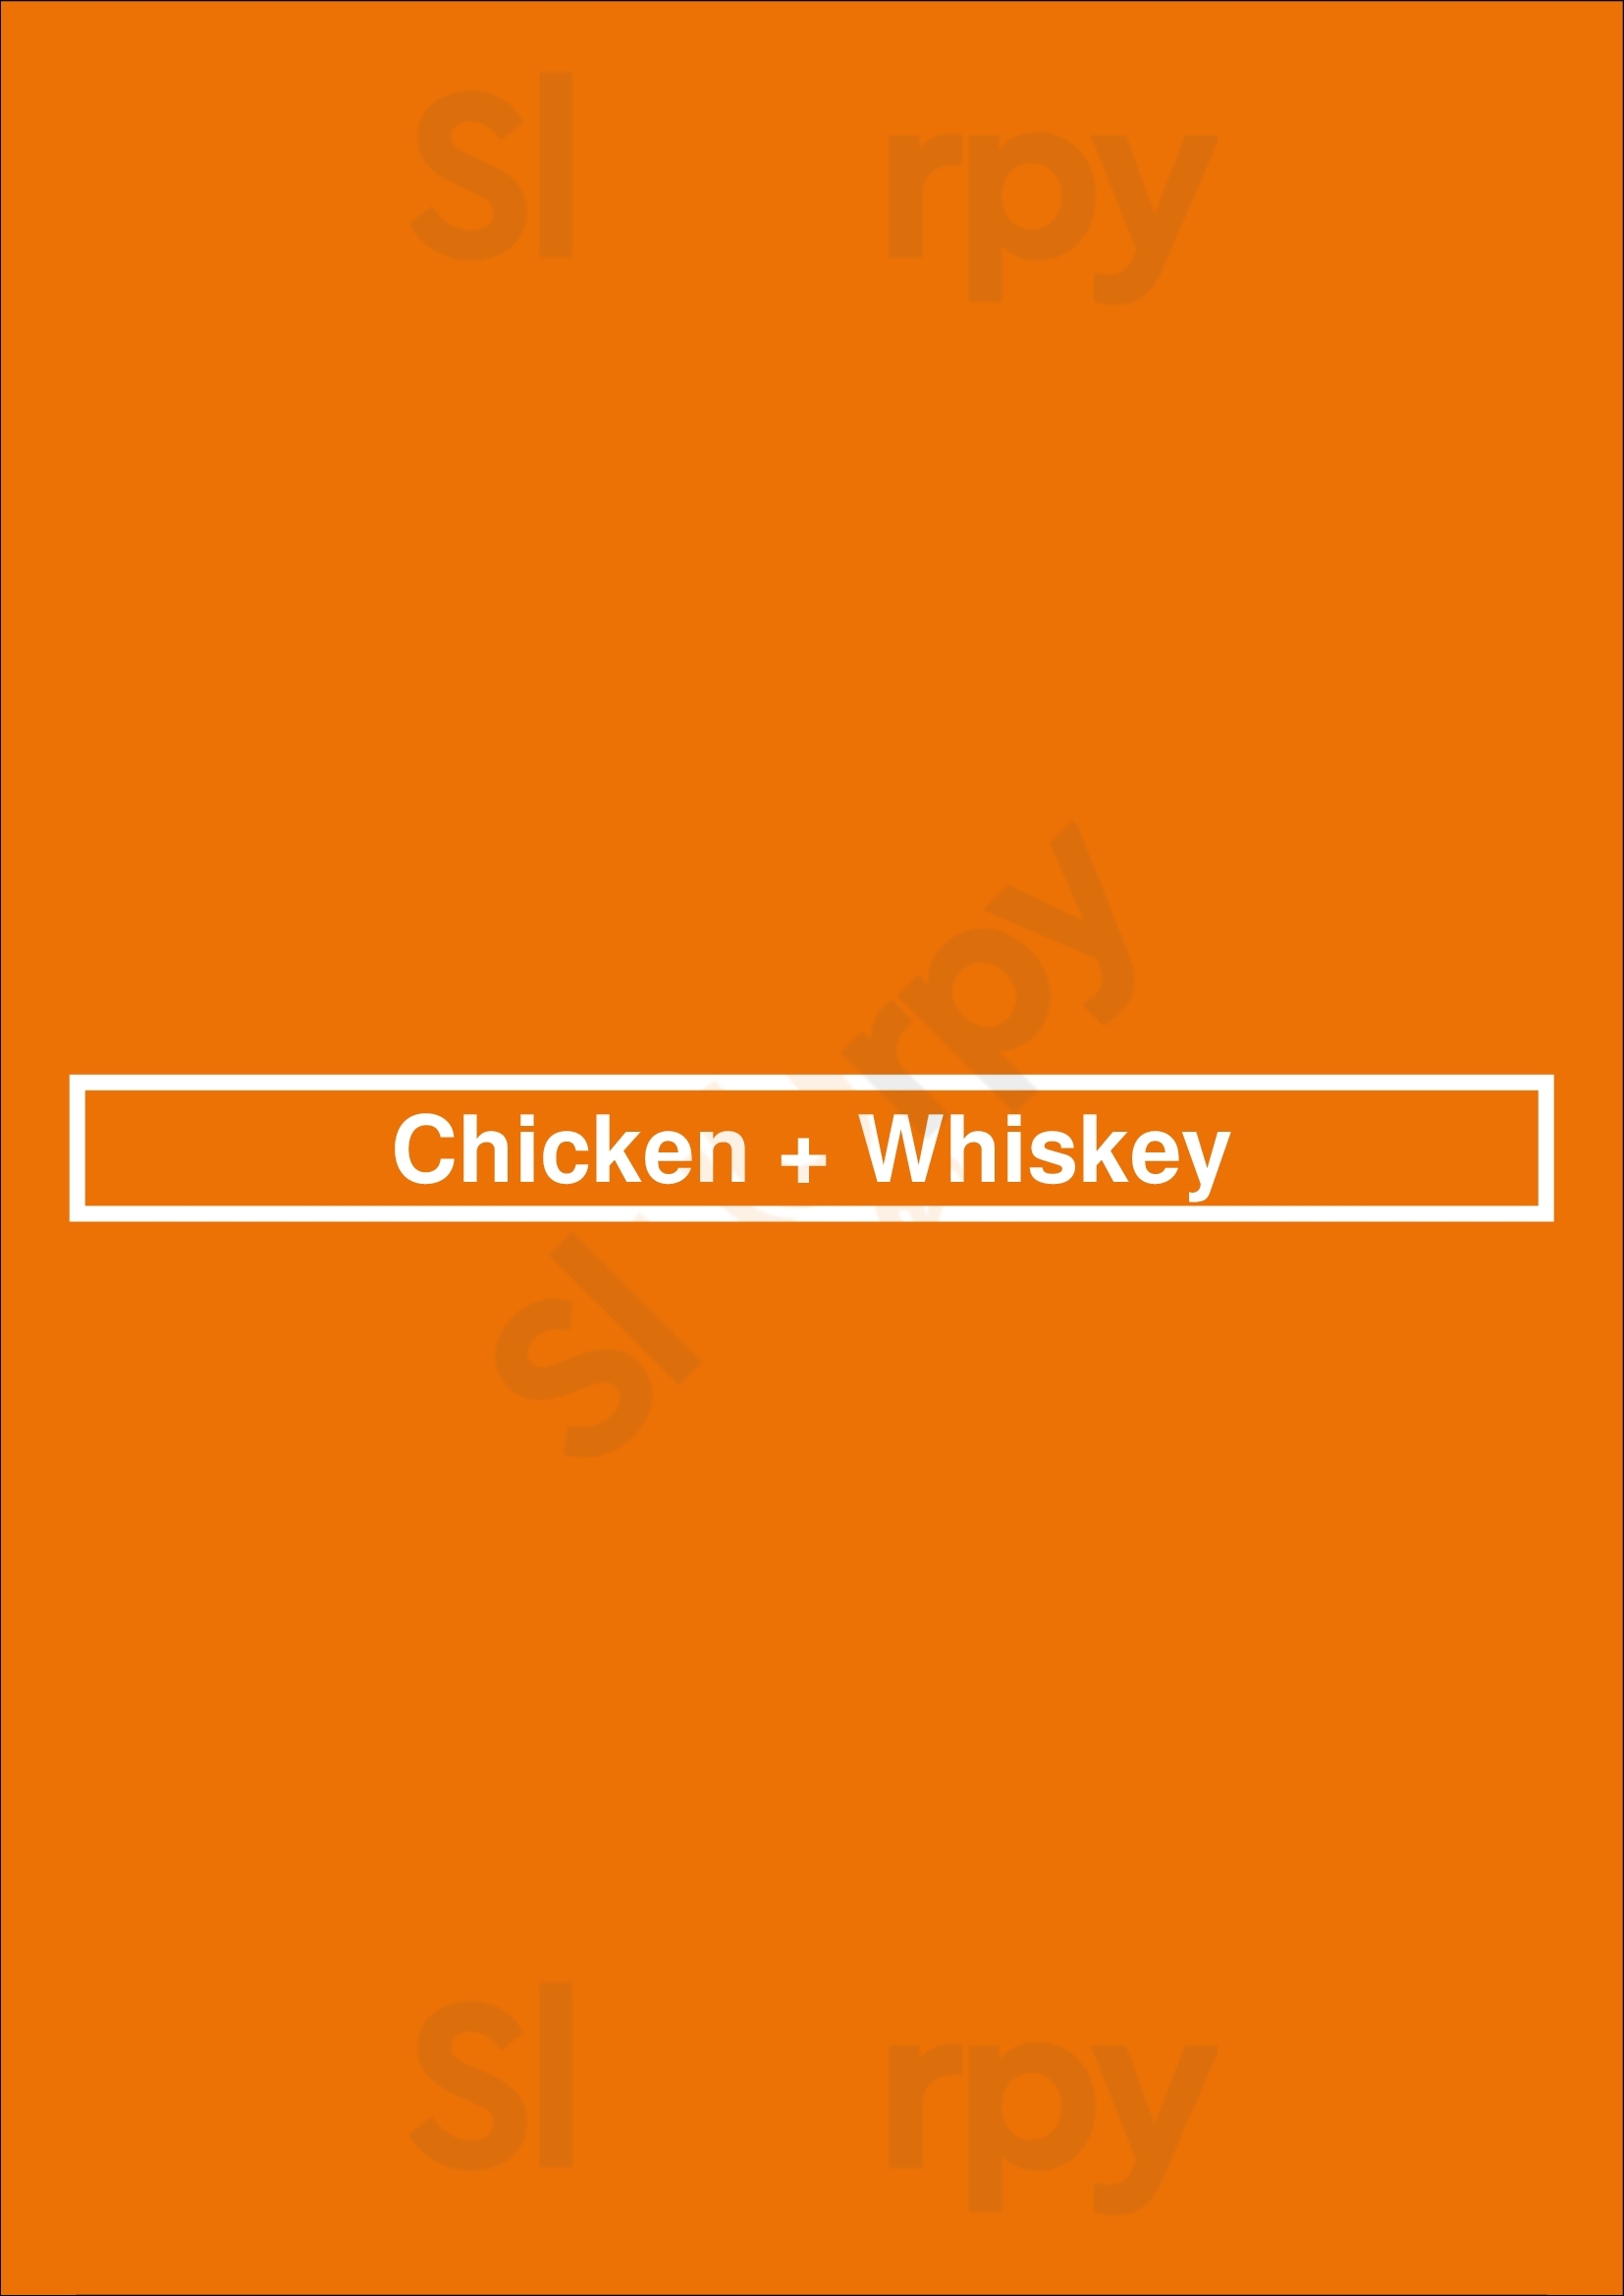 Chicken + Whiskey Washington DC Menu - 1